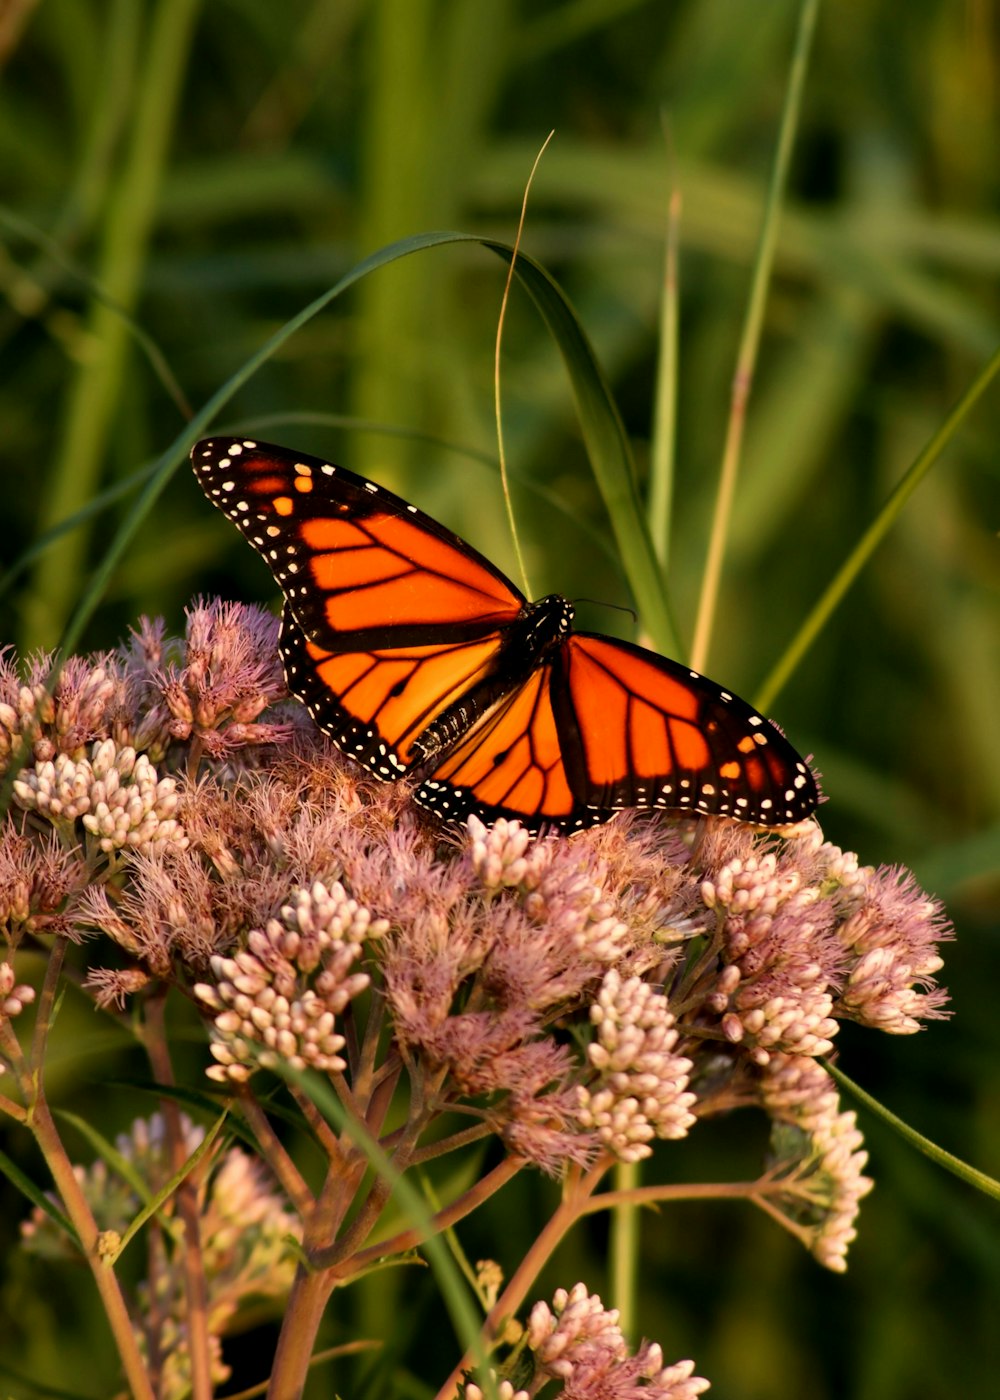 borboleta monarca empoleirada na flor branca na fotografia de perto durante o dia